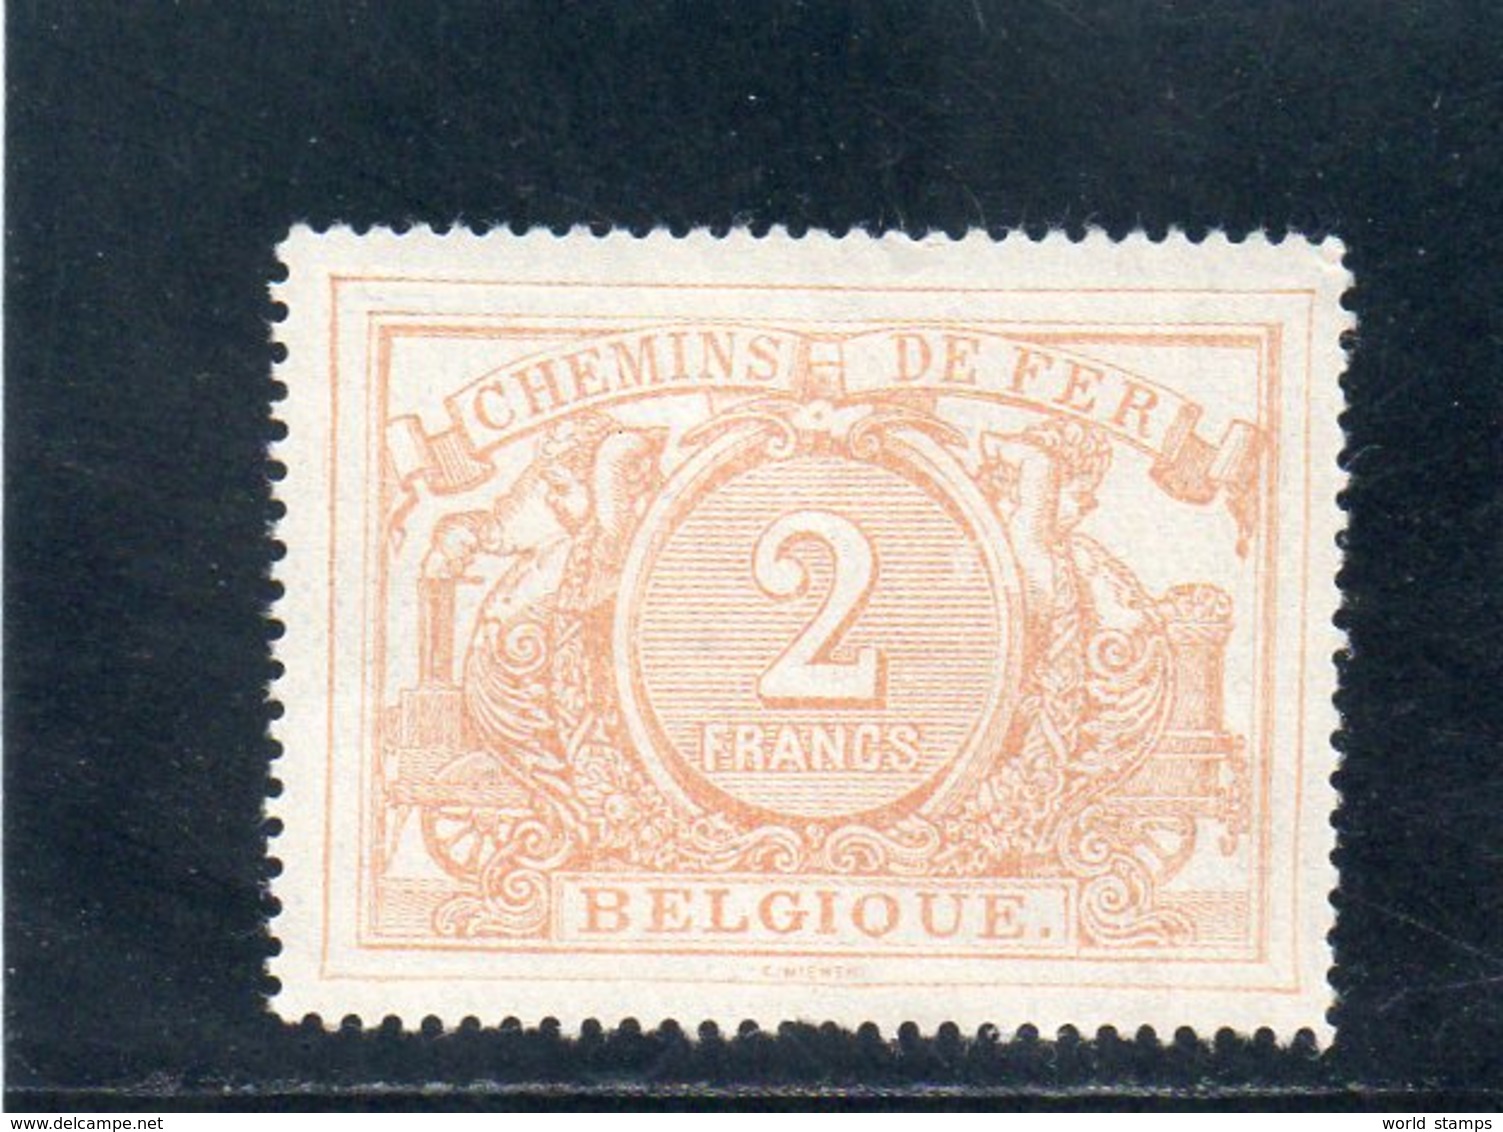 BELGIQUE 1892-4 * - Mint